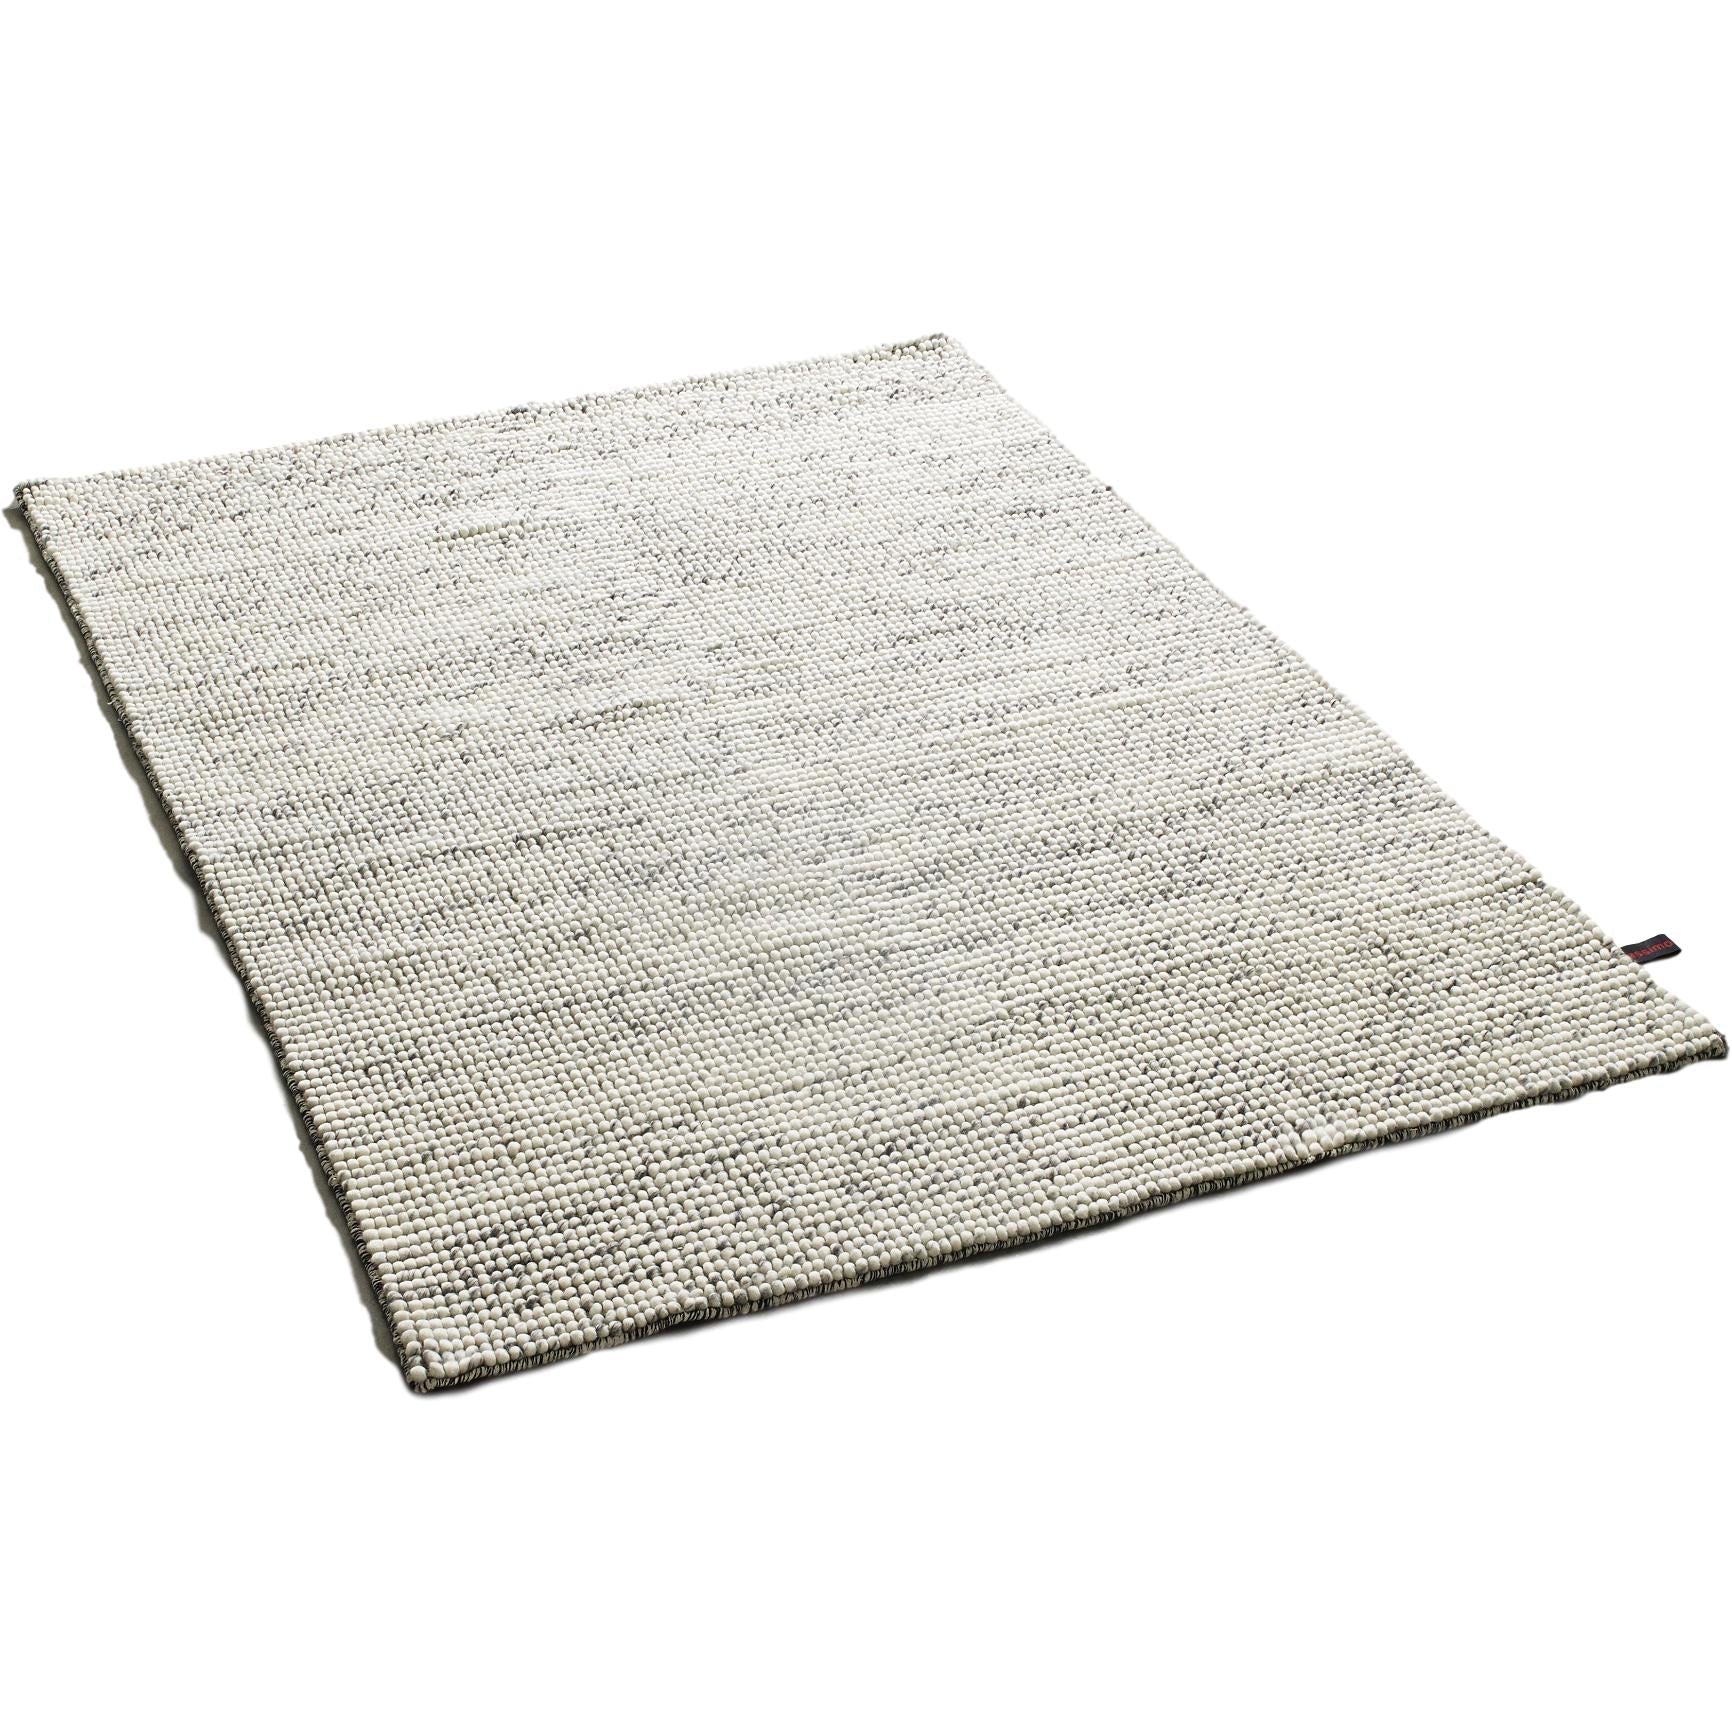 Massimo Bubbles tapis mixte gris, 170x240 cm